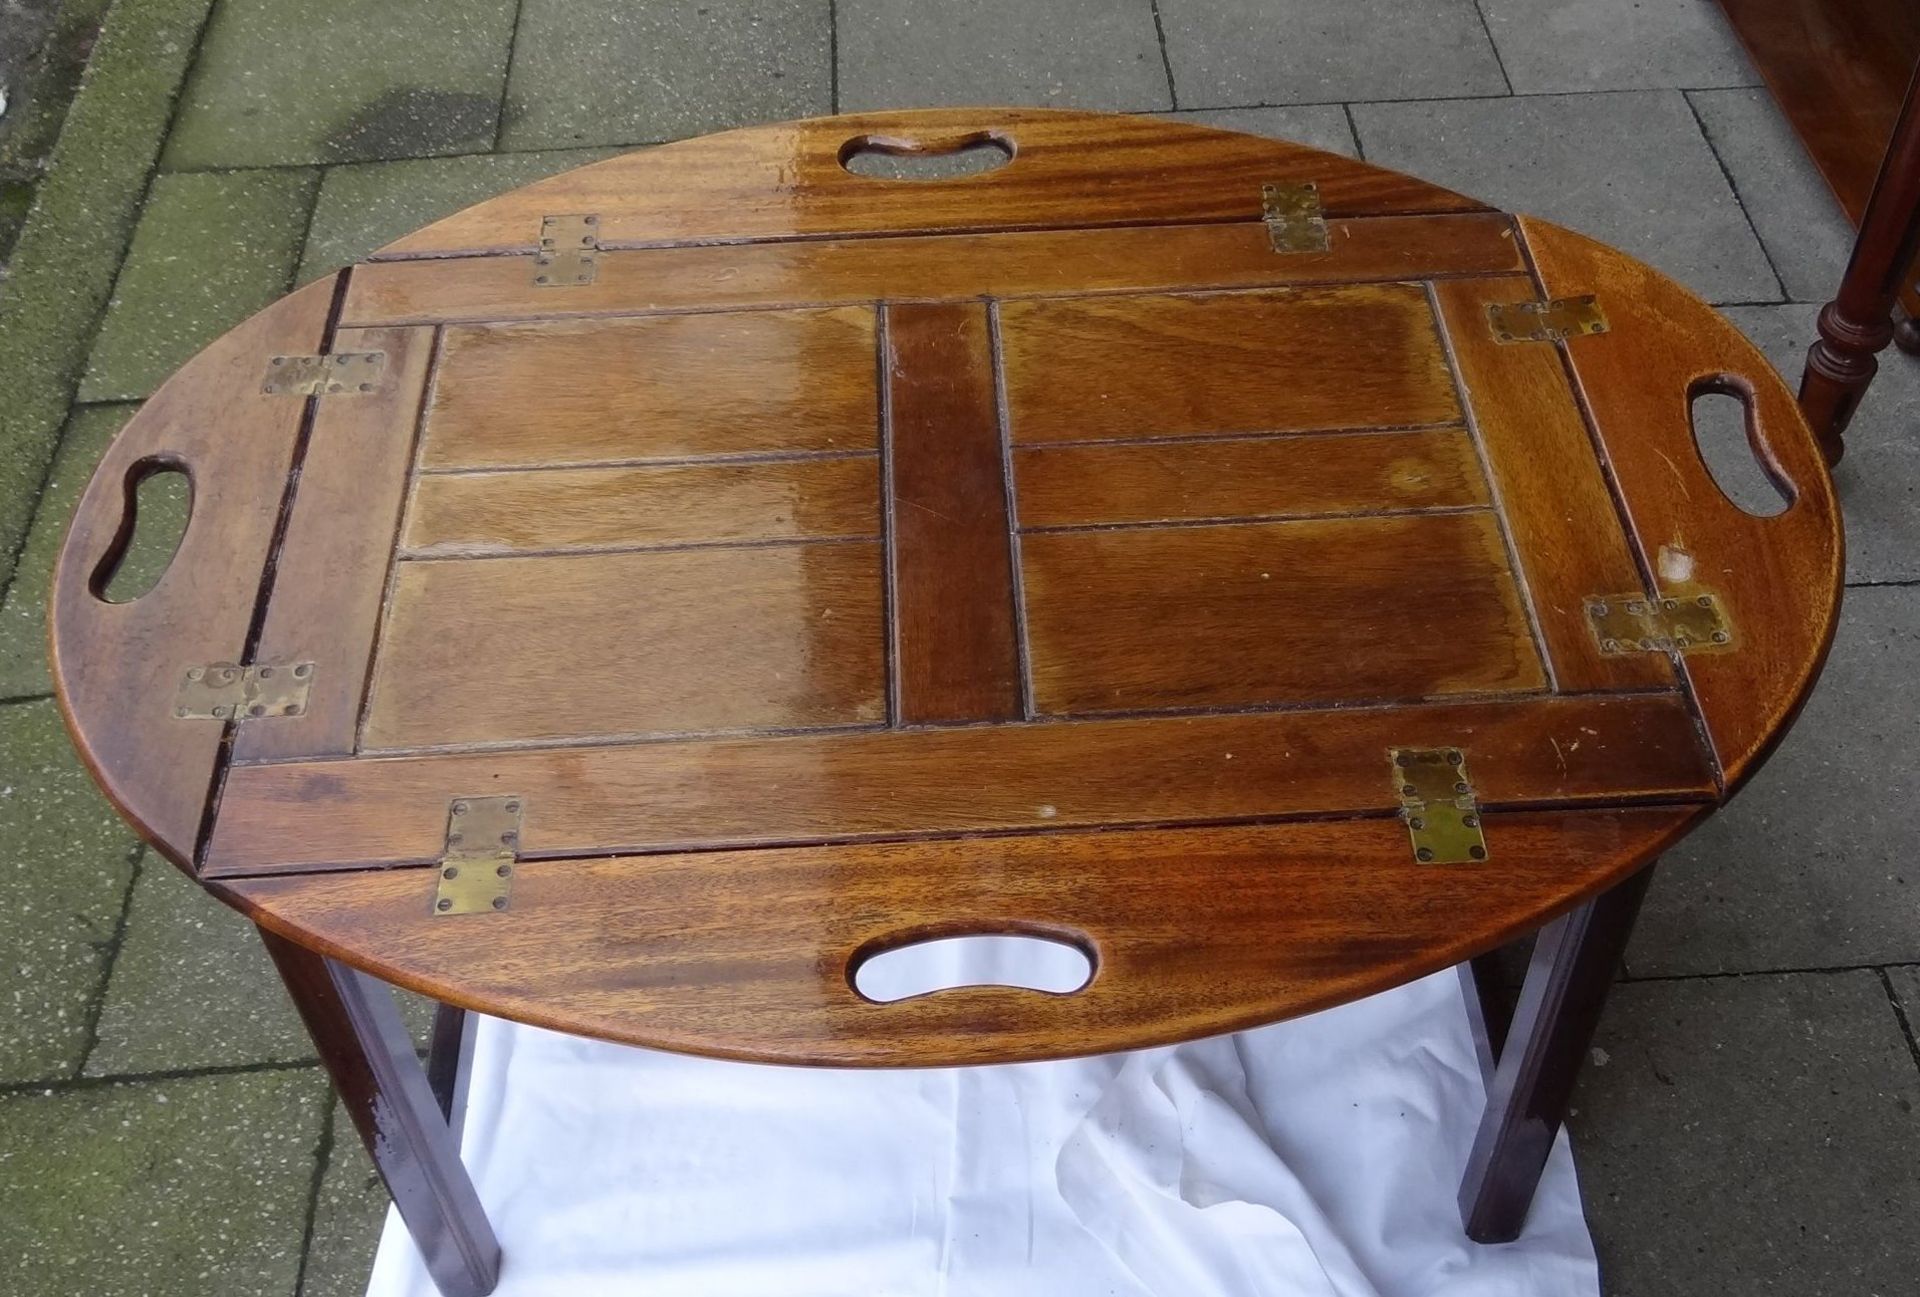 Tischchen im Maritim-Look, klappbare Seiten, H-59 cm, 91x66 cm - Image 2 of 5